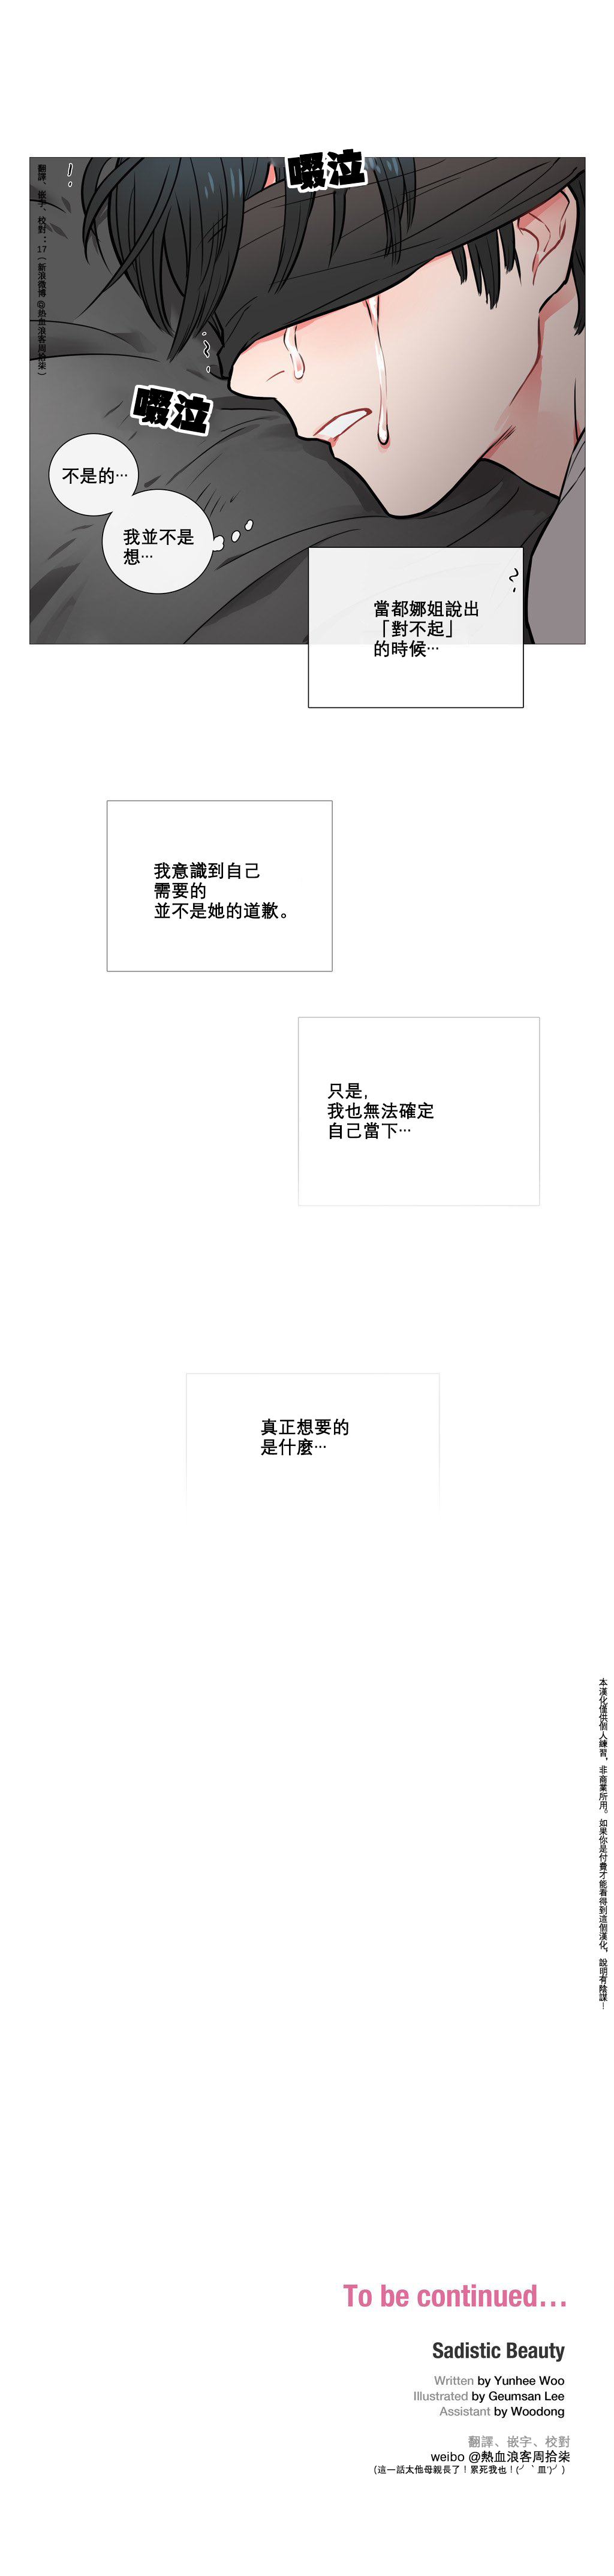 【神山】サディスティックビューティーCh.1-19【中国語】【17汉化】